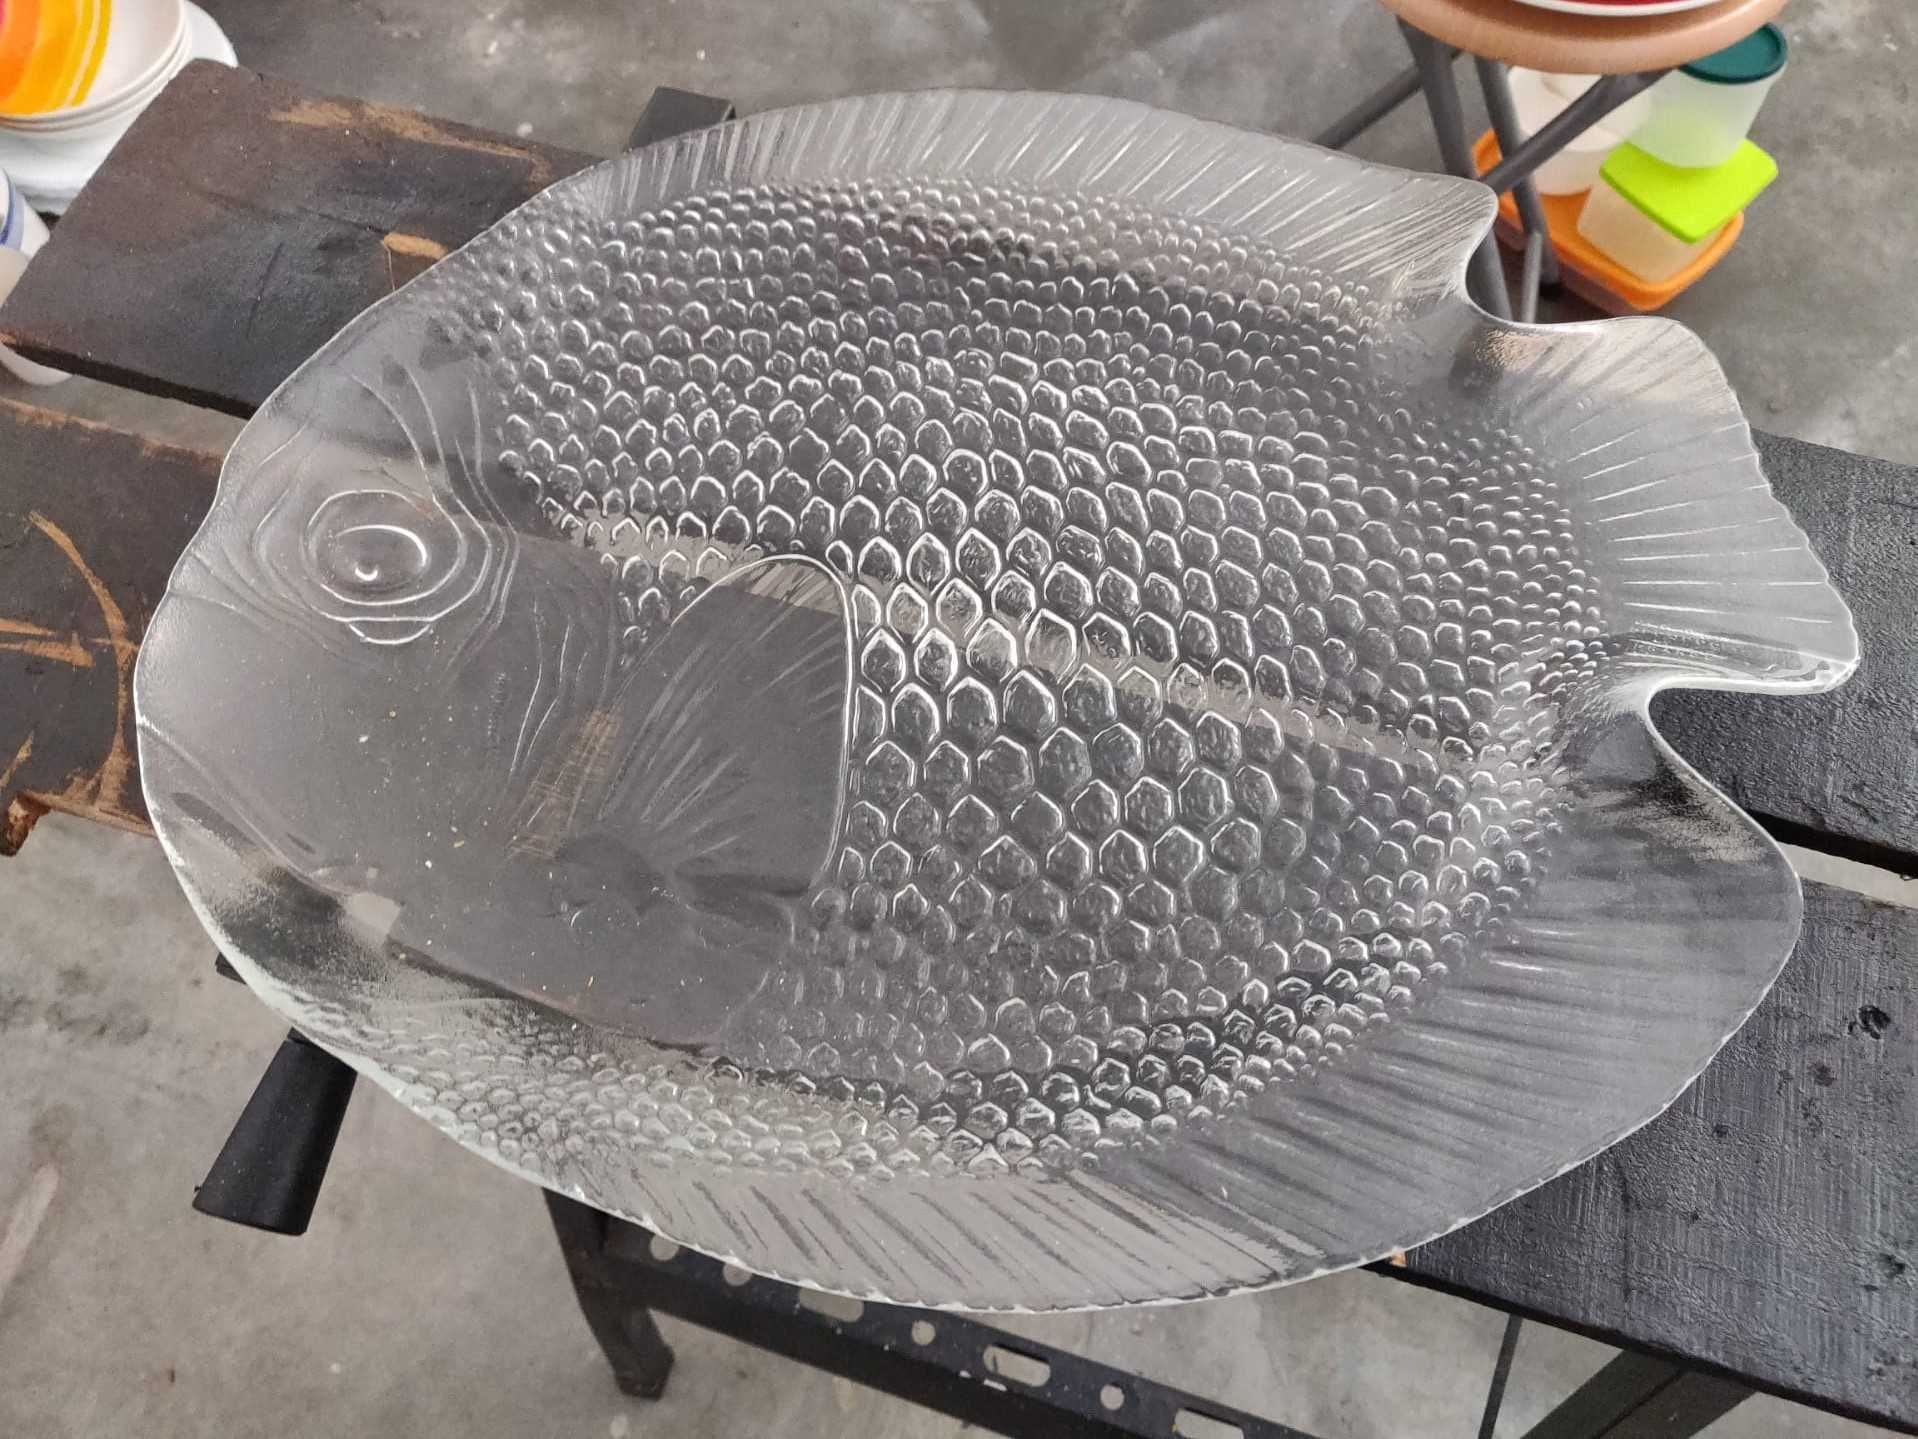 Prato em forma de peixe